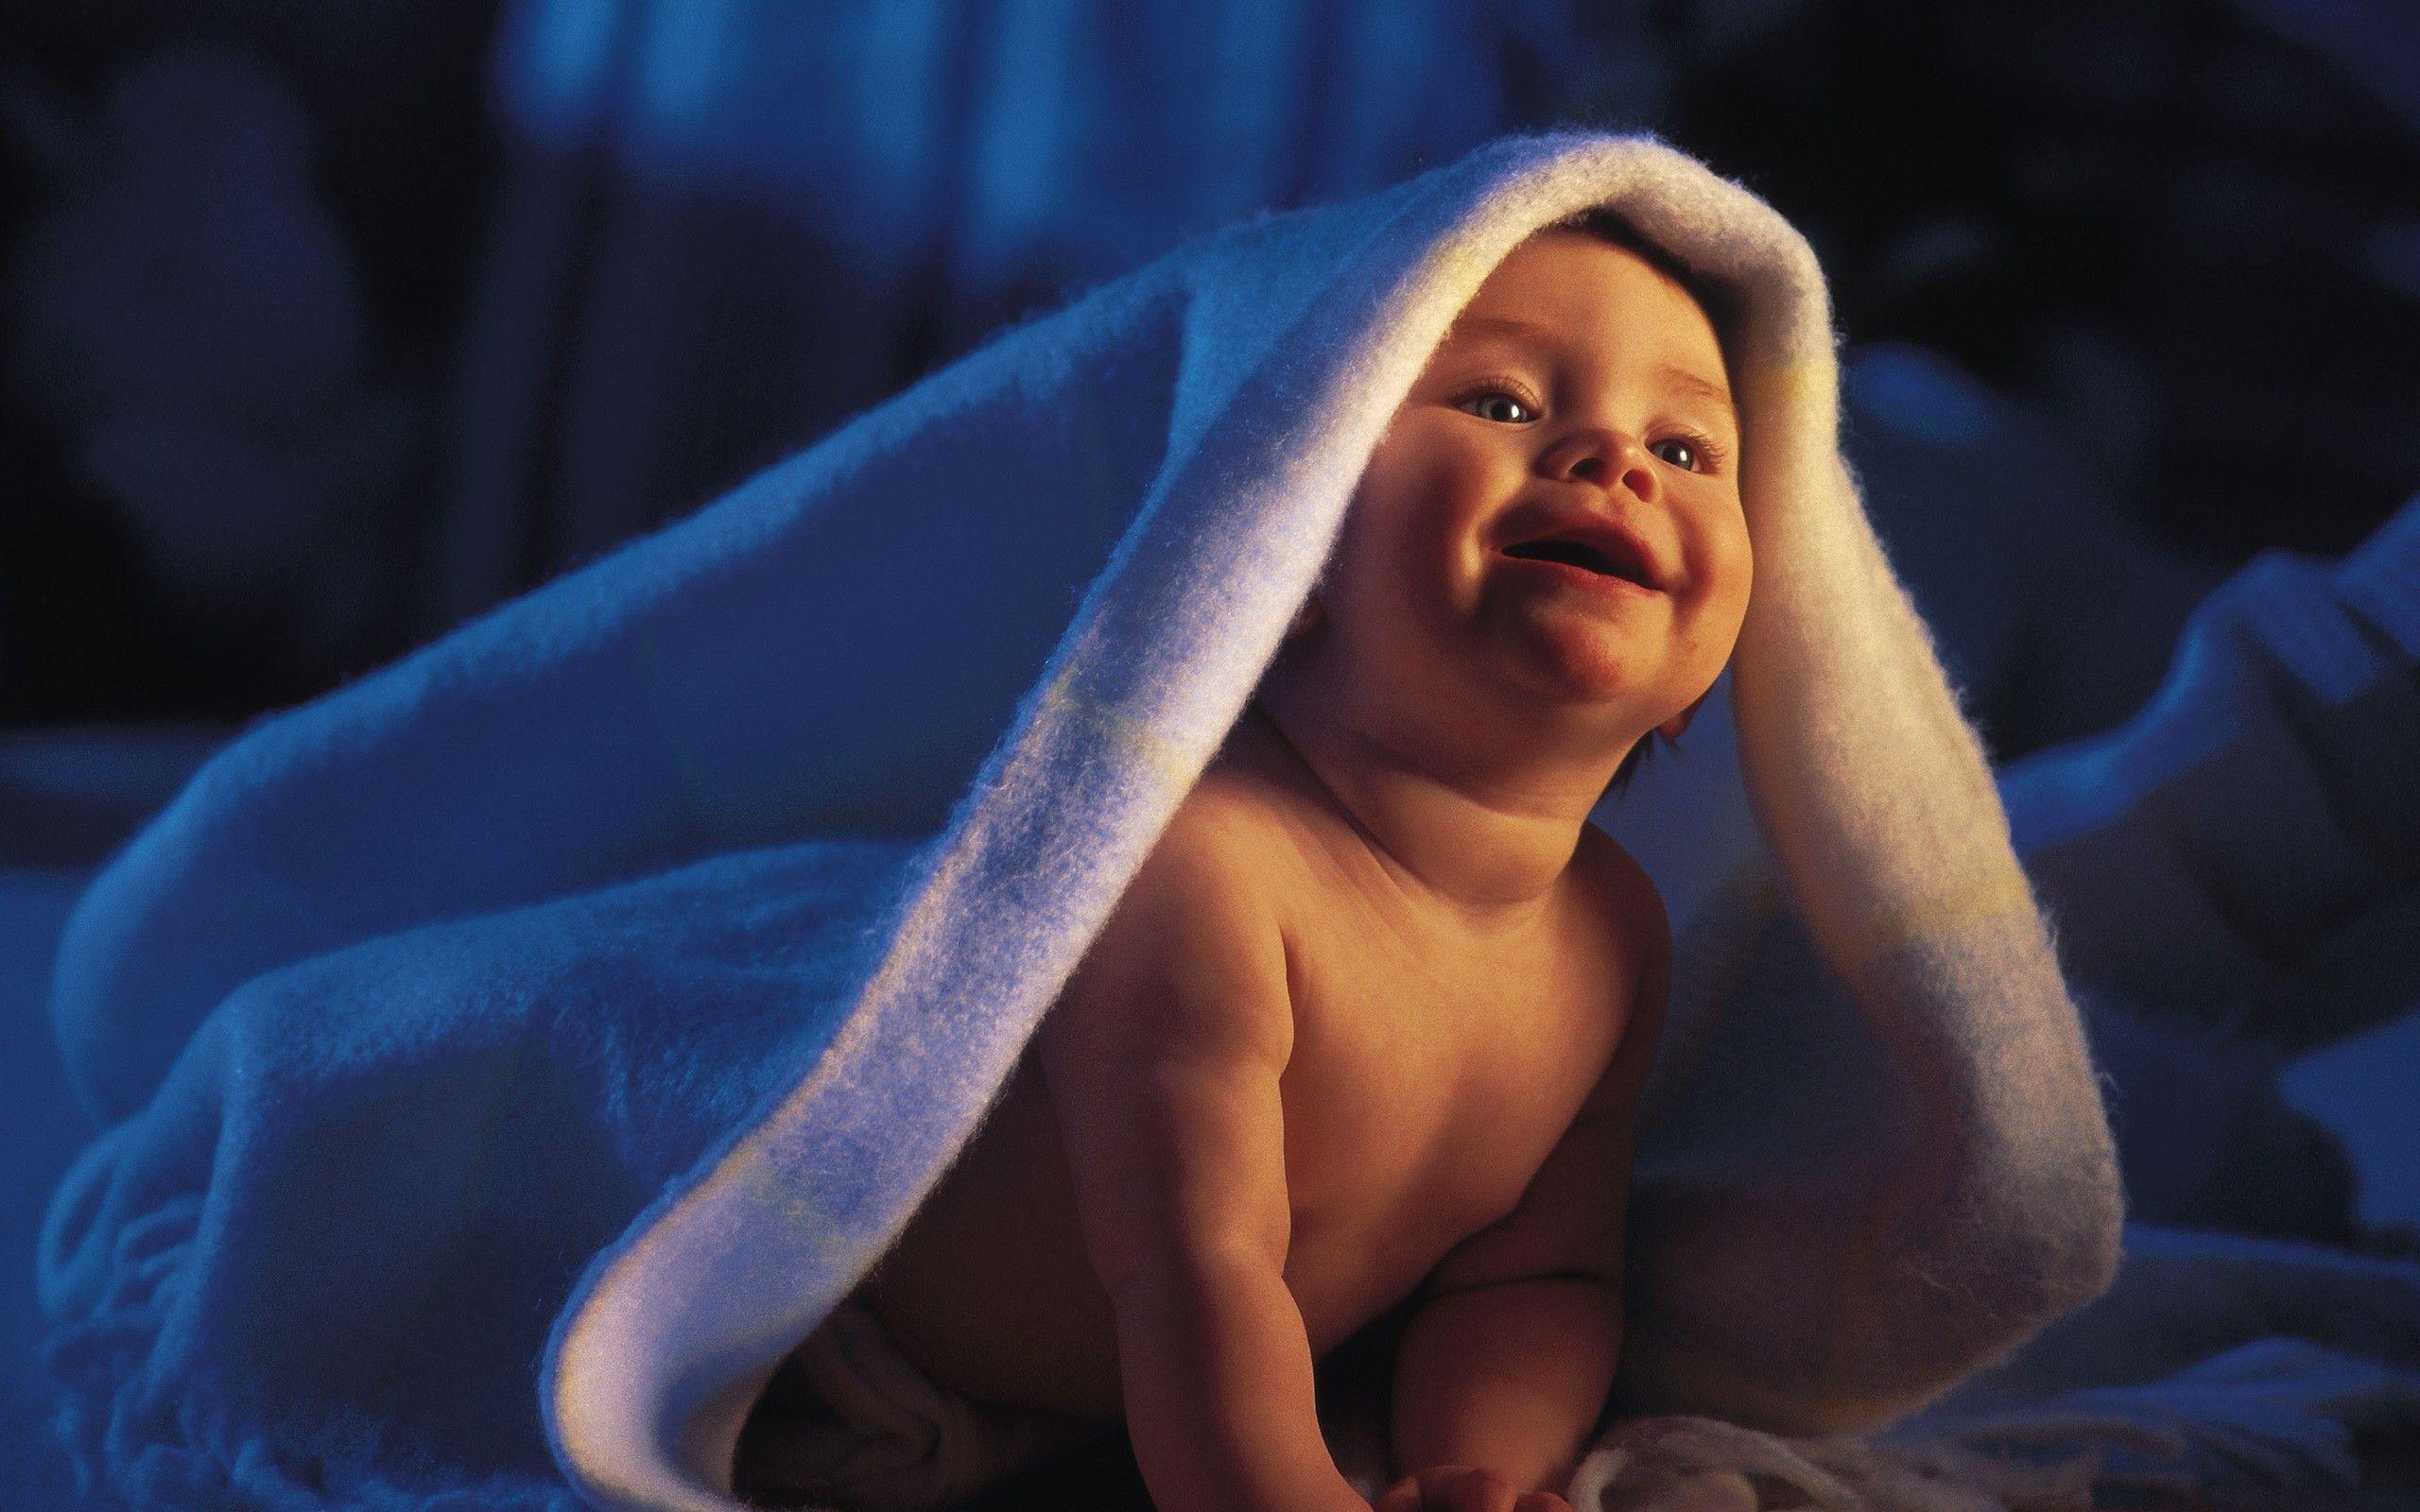 Download the Baby Under Blanket Wallpaper, Baby Under Blanket iPhone